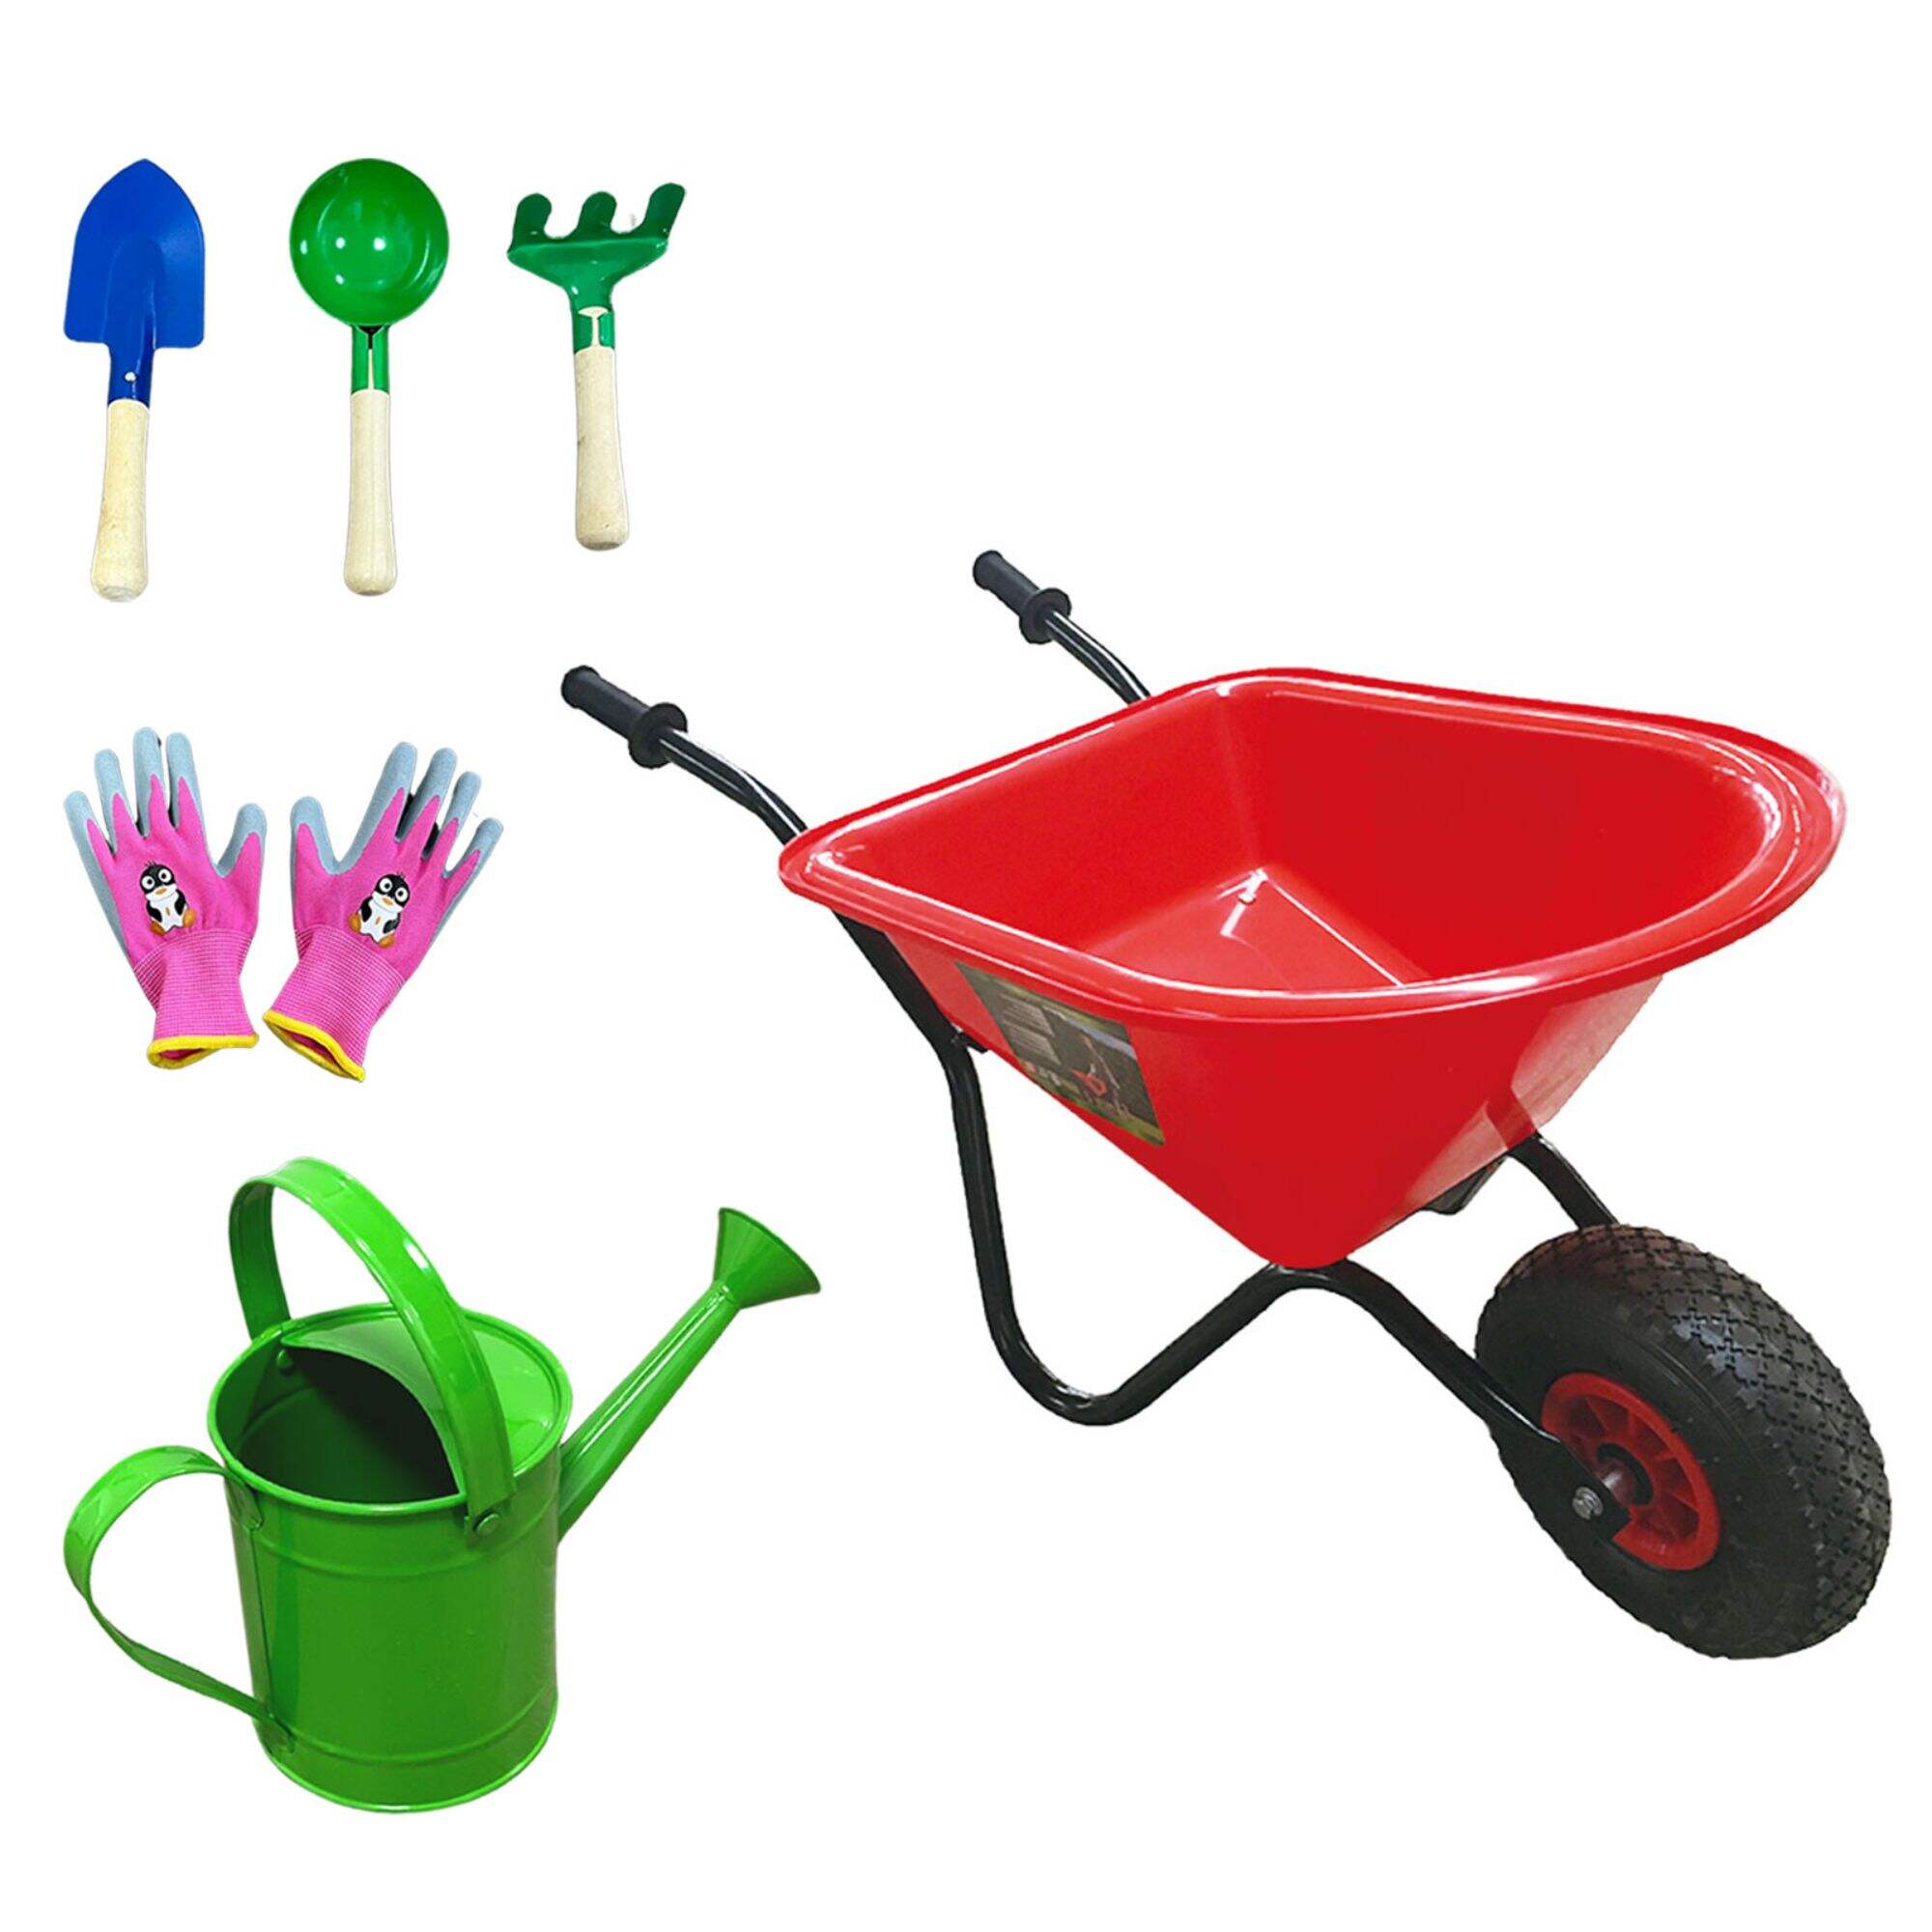 WB0101 Taczka dla dzieci, narzędzia ogrodnicze dla dzieci z 10-calowym kołem pneumatycznym 3.00-4